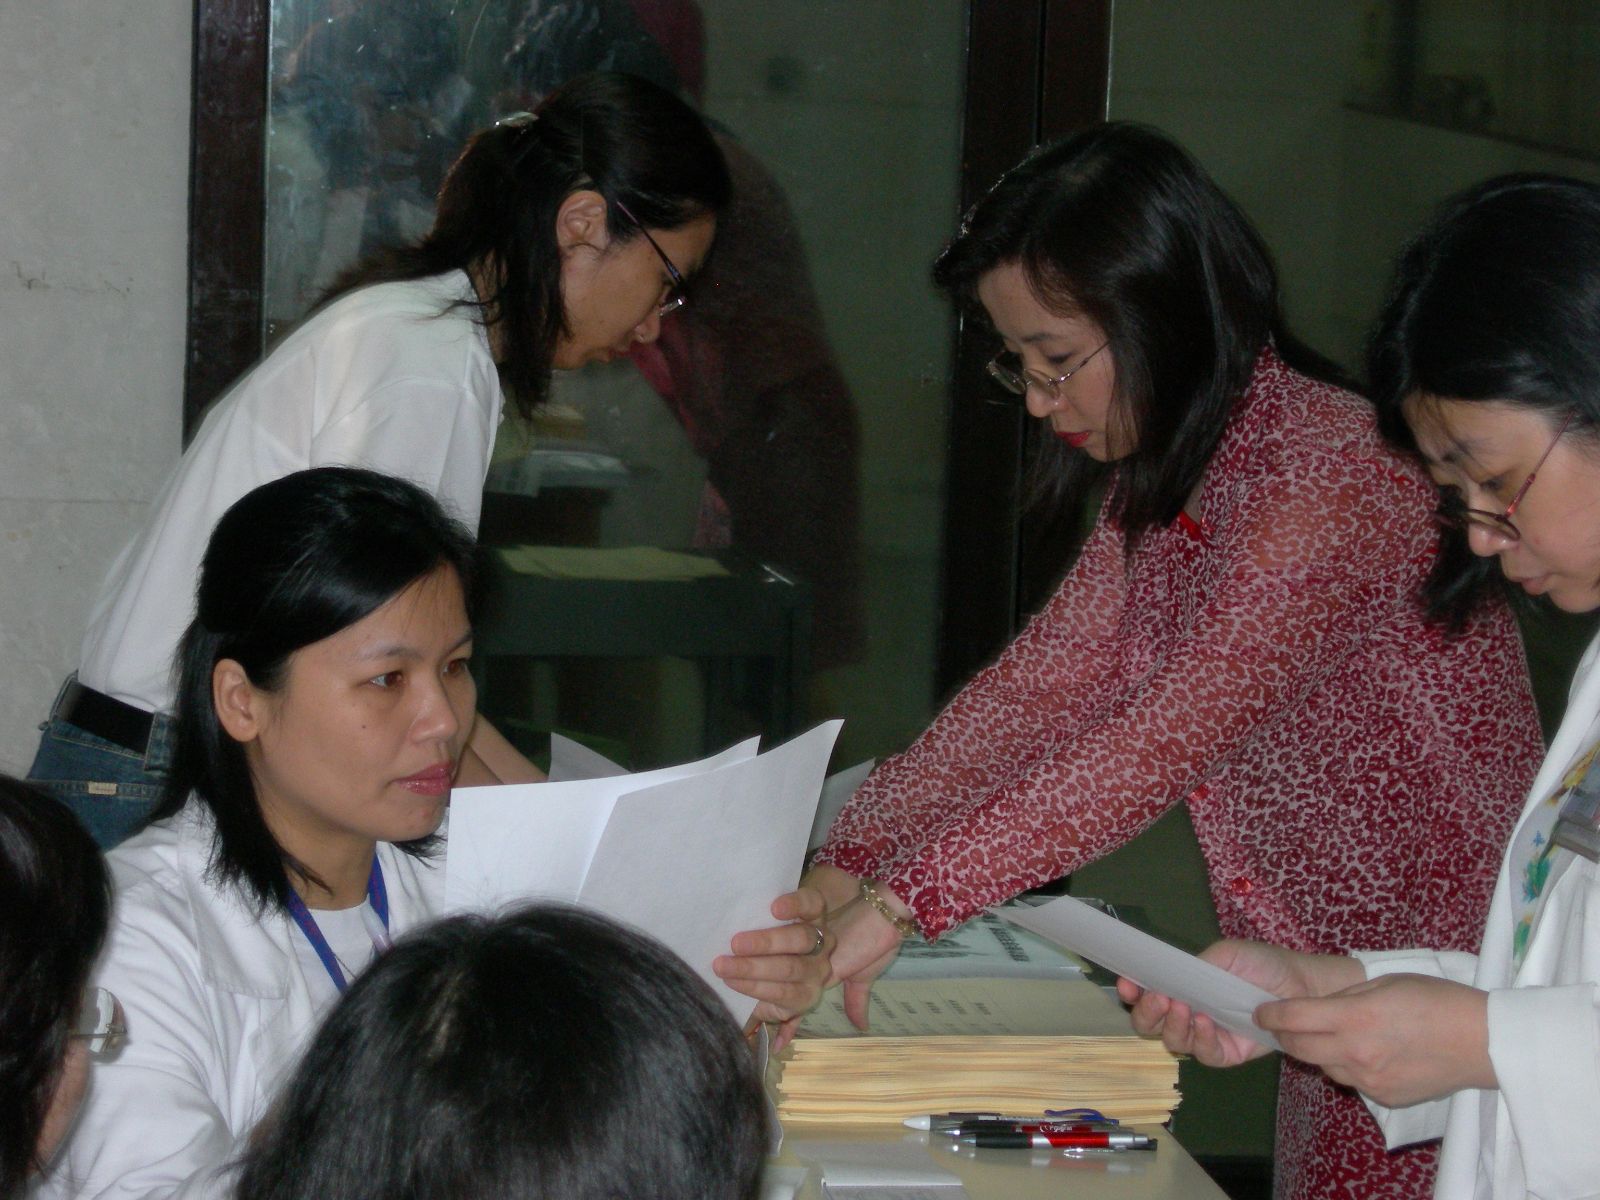 北榮醫護人員及志工幹部們協助會員報到，會員們領取「心肝寶貝俱樂部2006年度會員大會手冊」